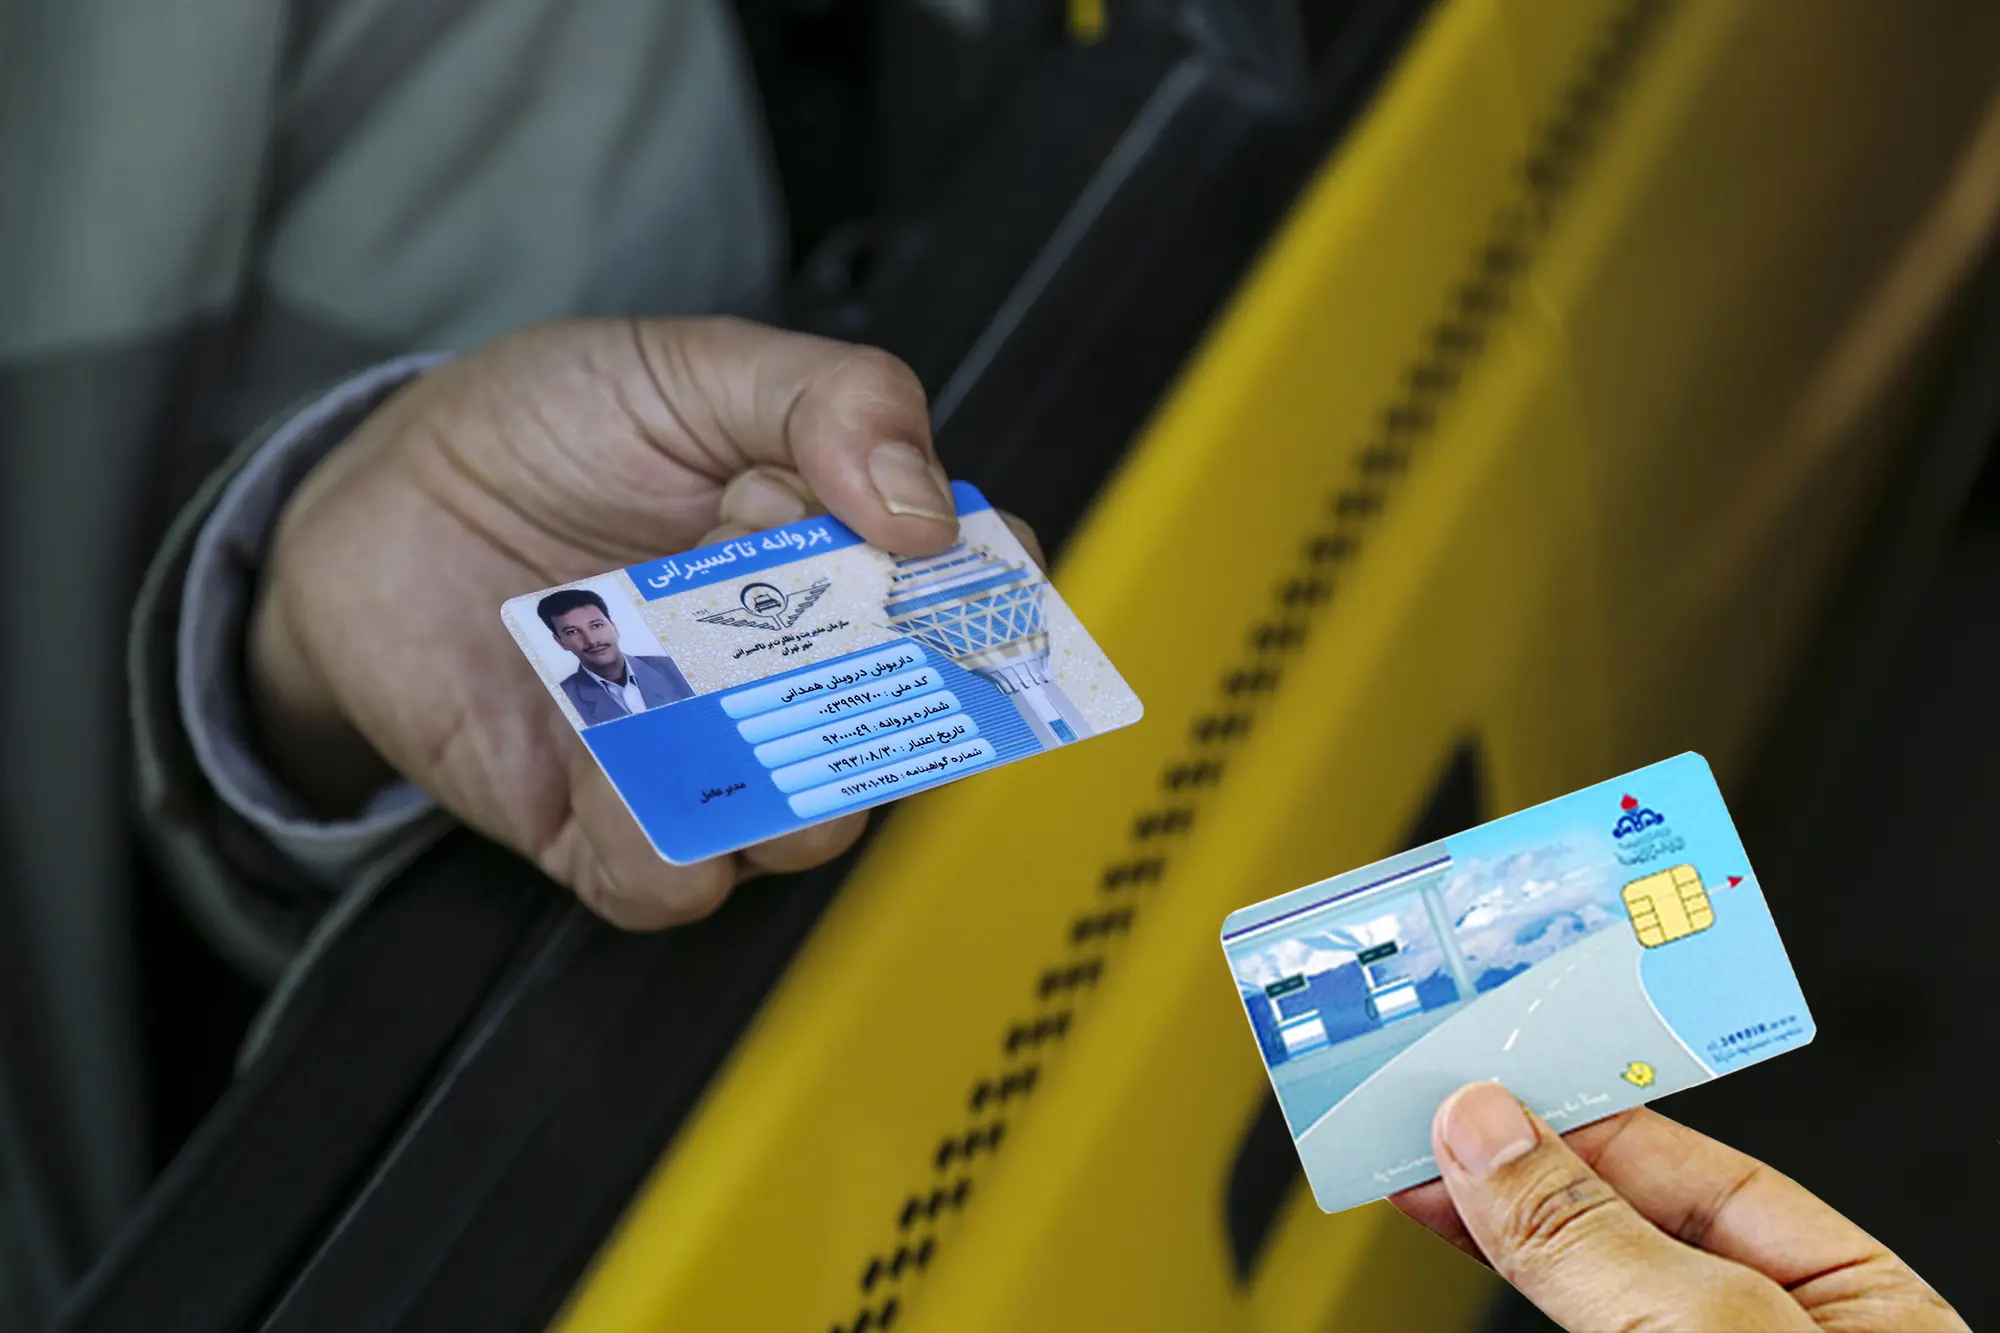  هشدار سازمان تاکسیرانی به رانندگان فاقد پروانه هوشمند معتبر در آستانه احیای مجدد کارت سوخت